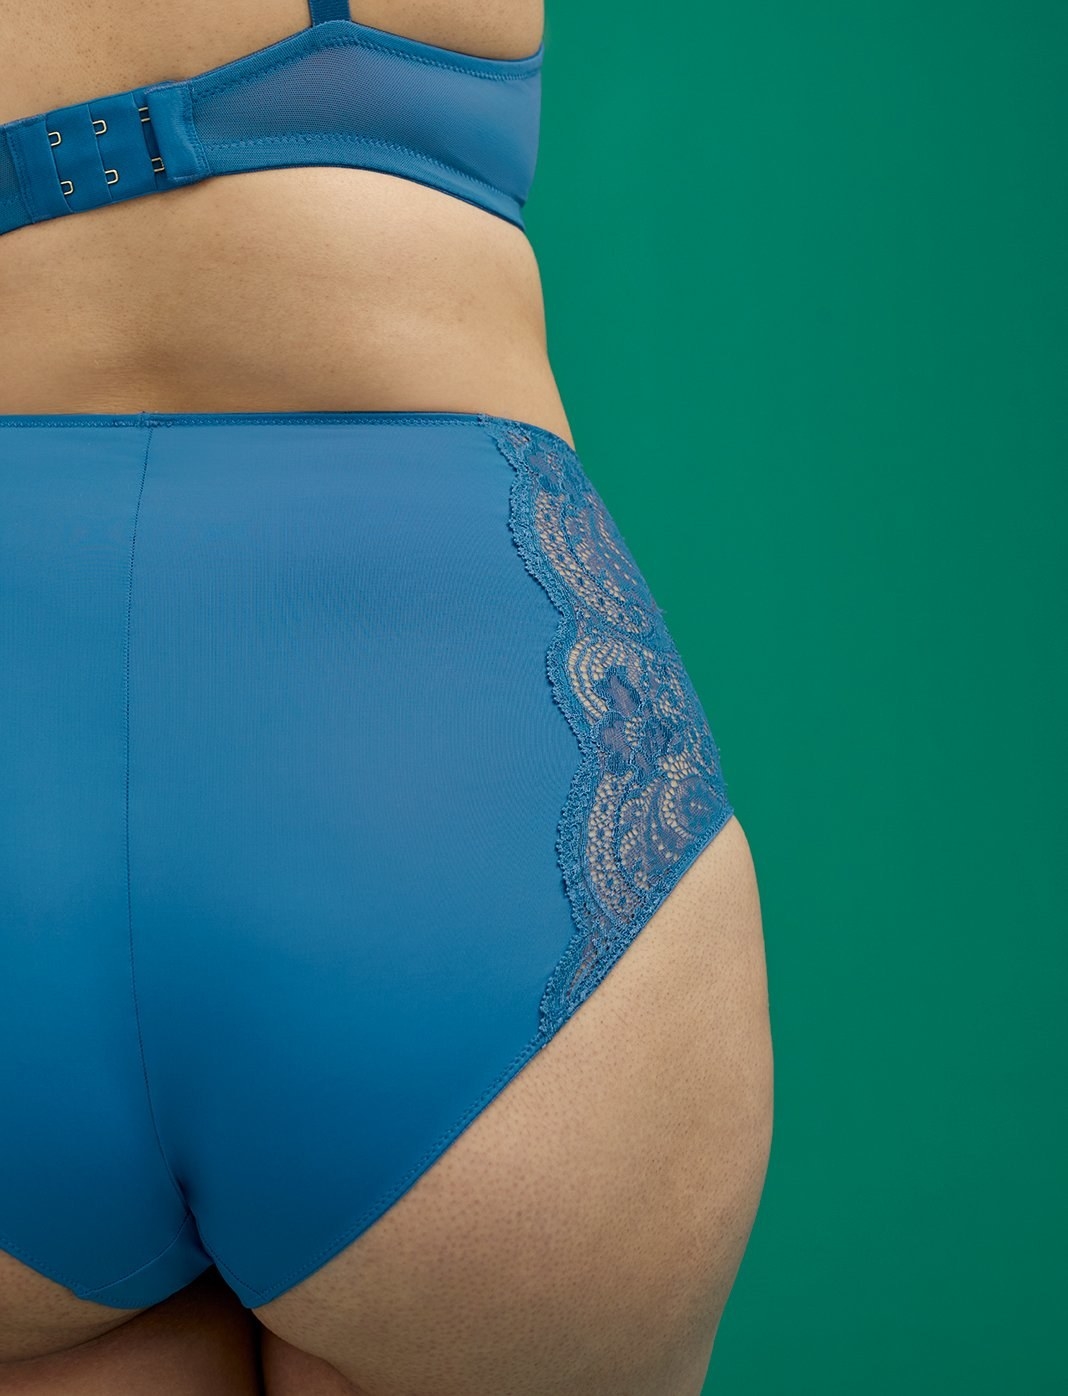 Xxx Sex Hot16 - 39 Pairs Of The Best Plus-Size Underwear